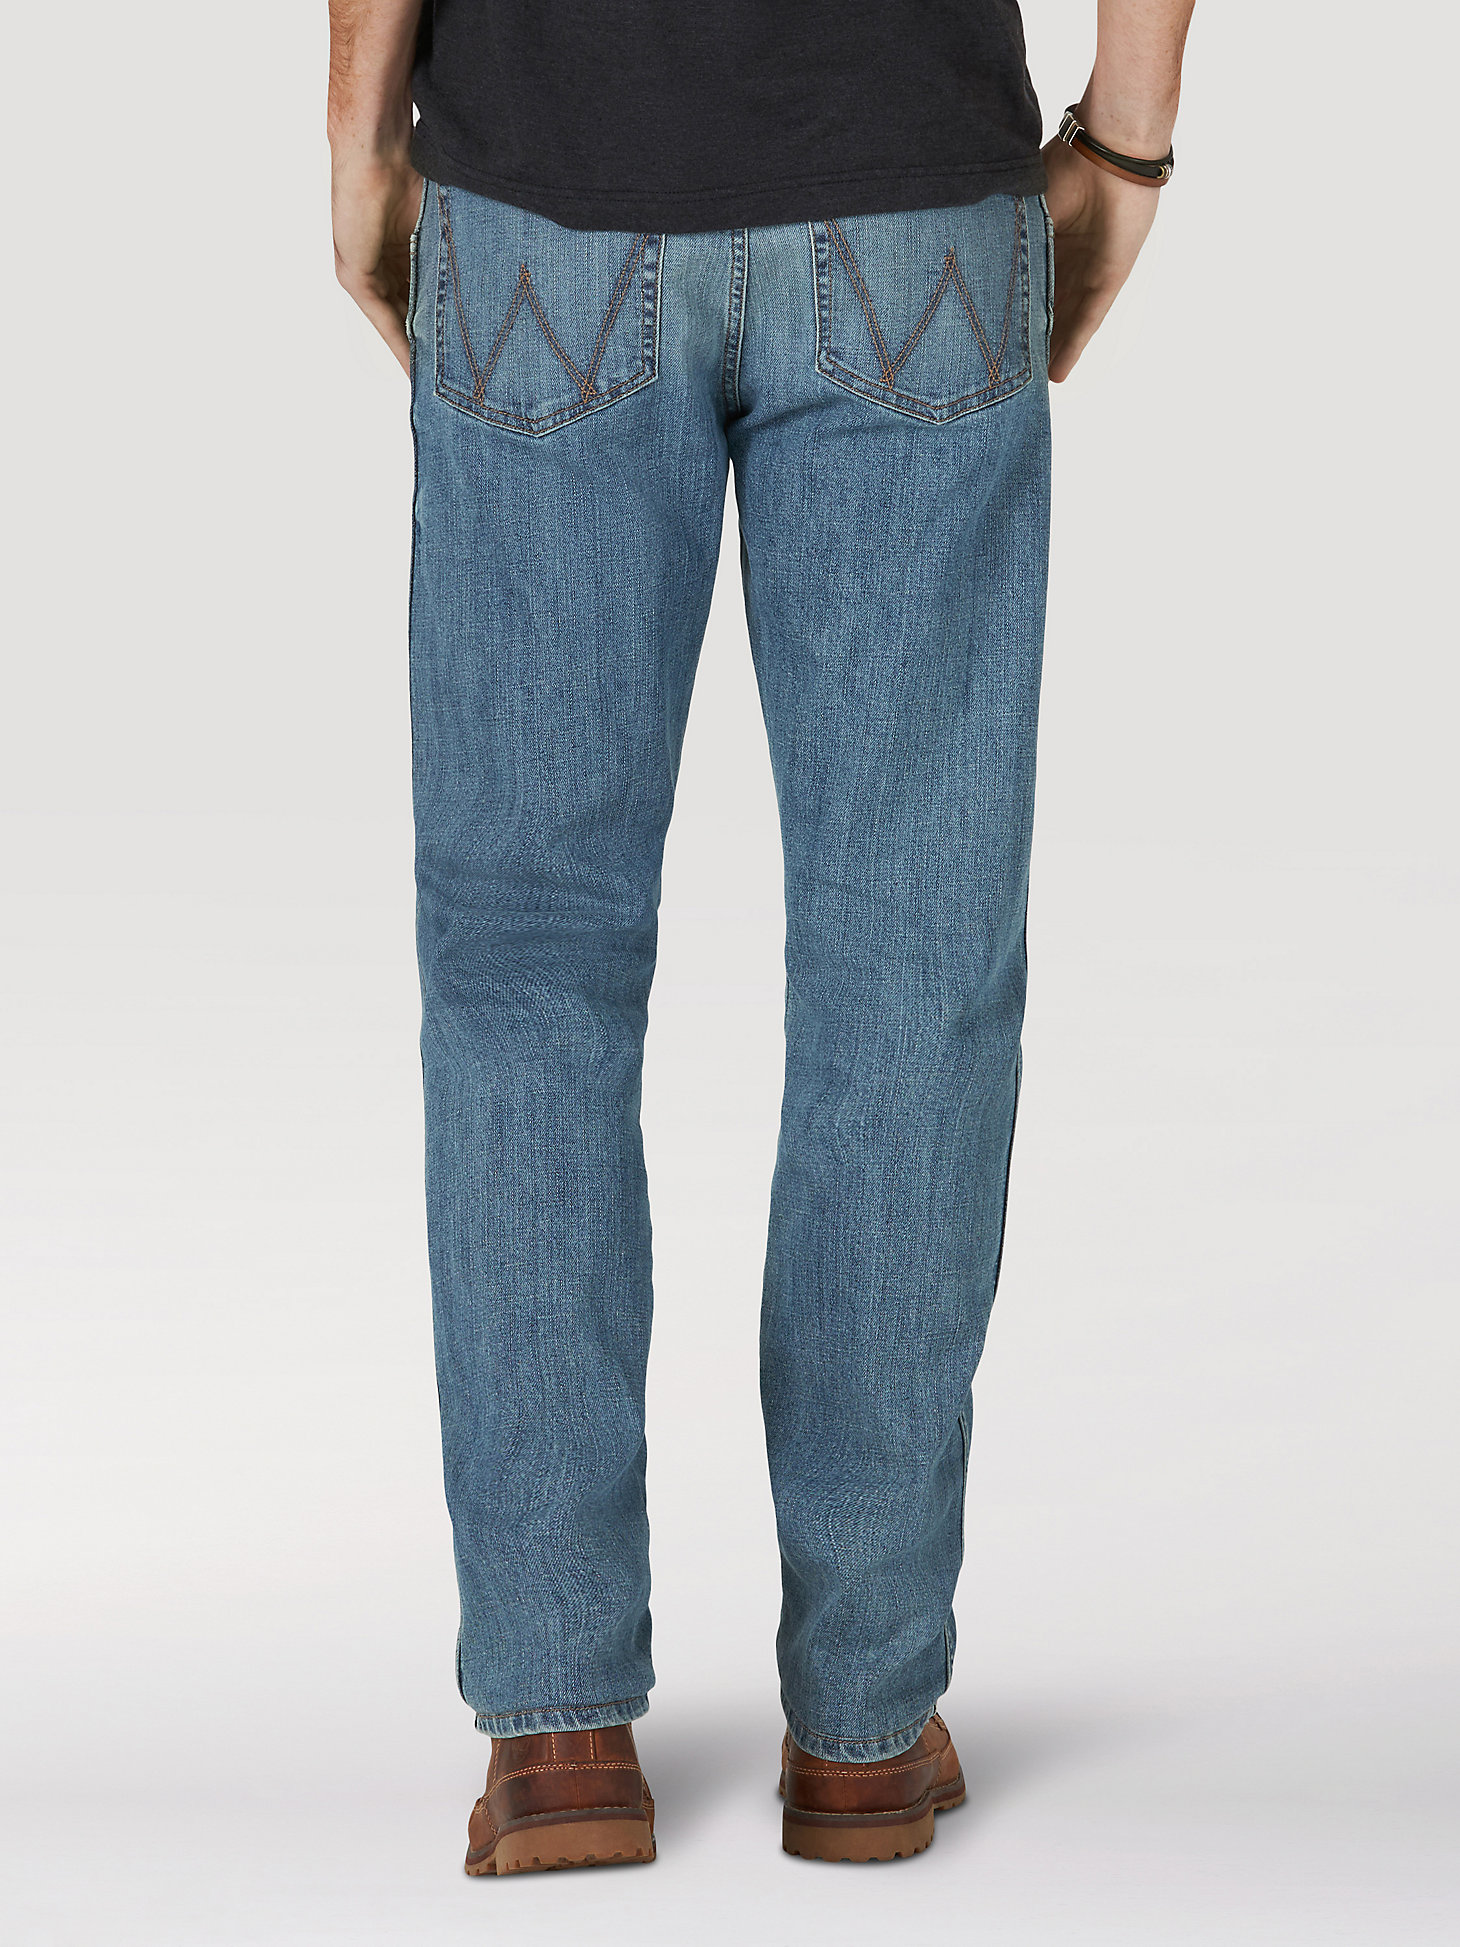 Men's Wrangler® Slim Straight Jean in Weft alternative view 1